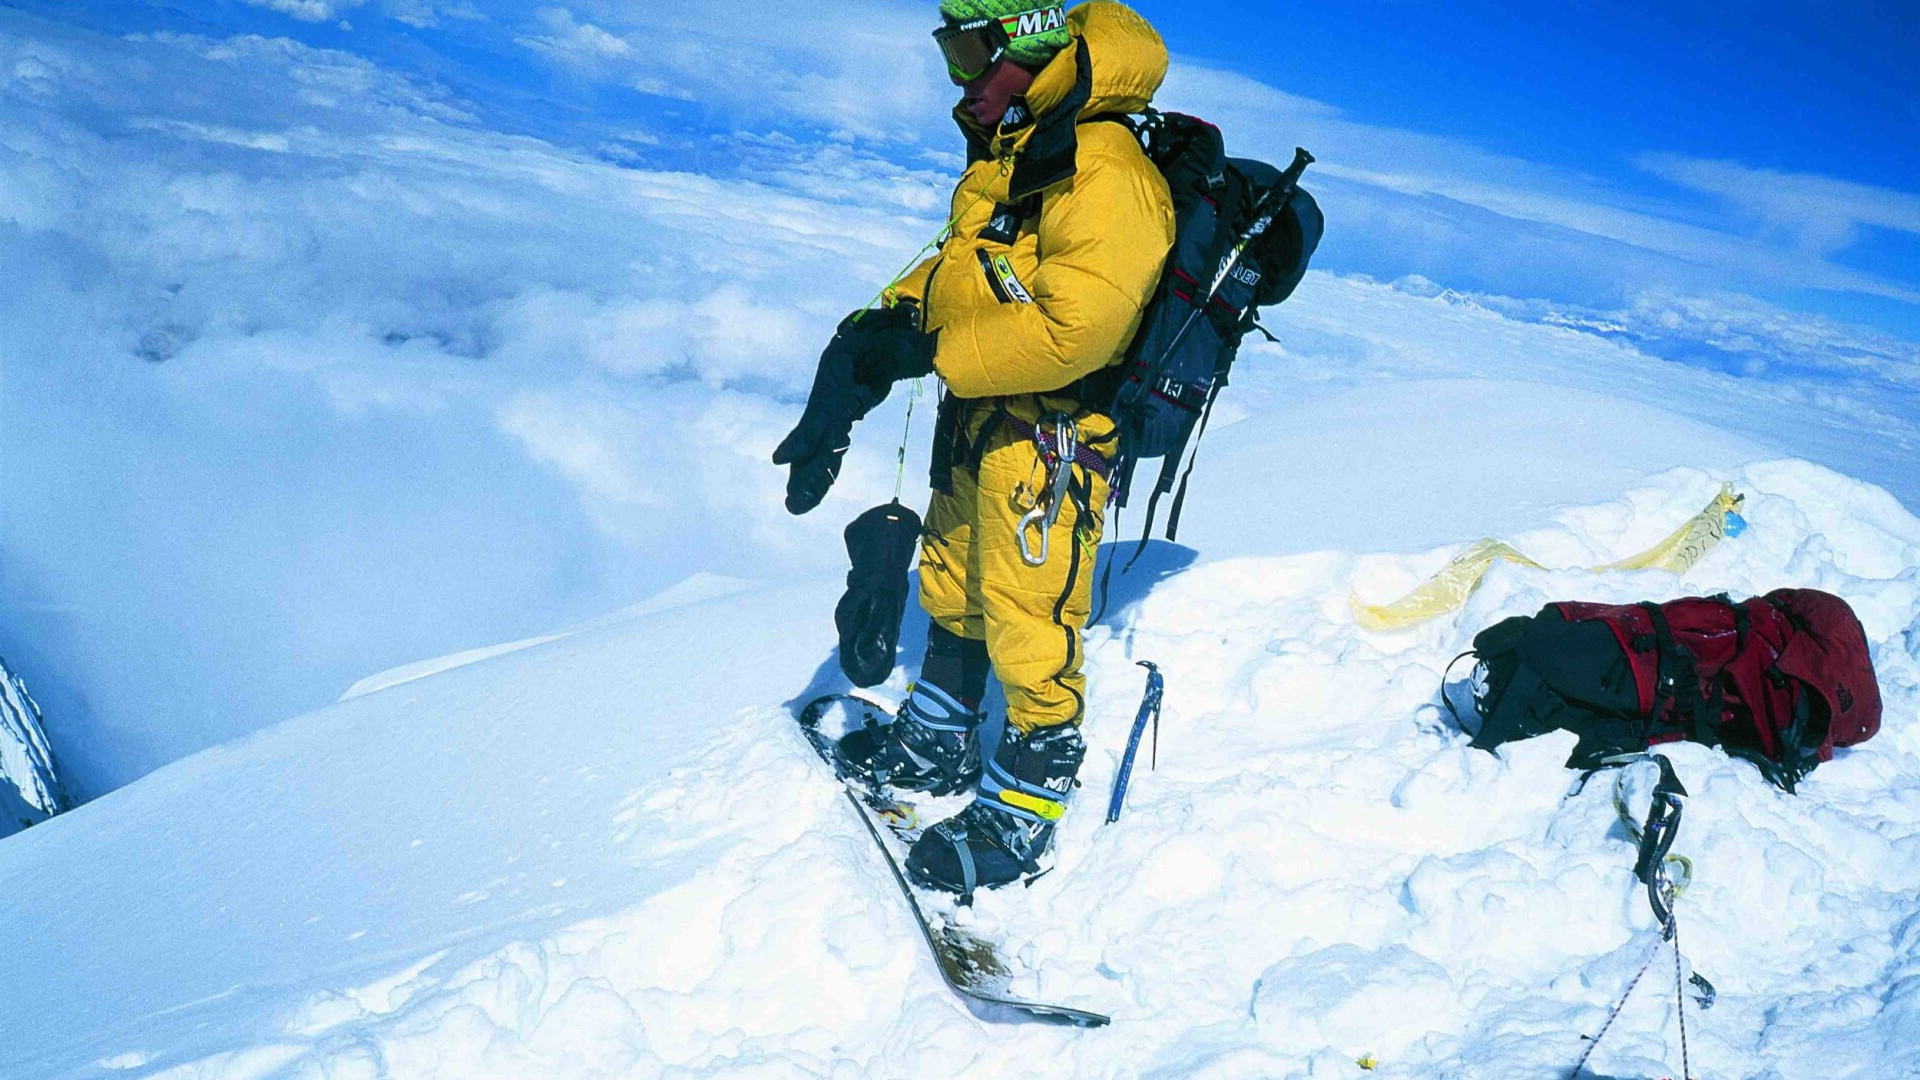 Marco Siffredi snowboarding